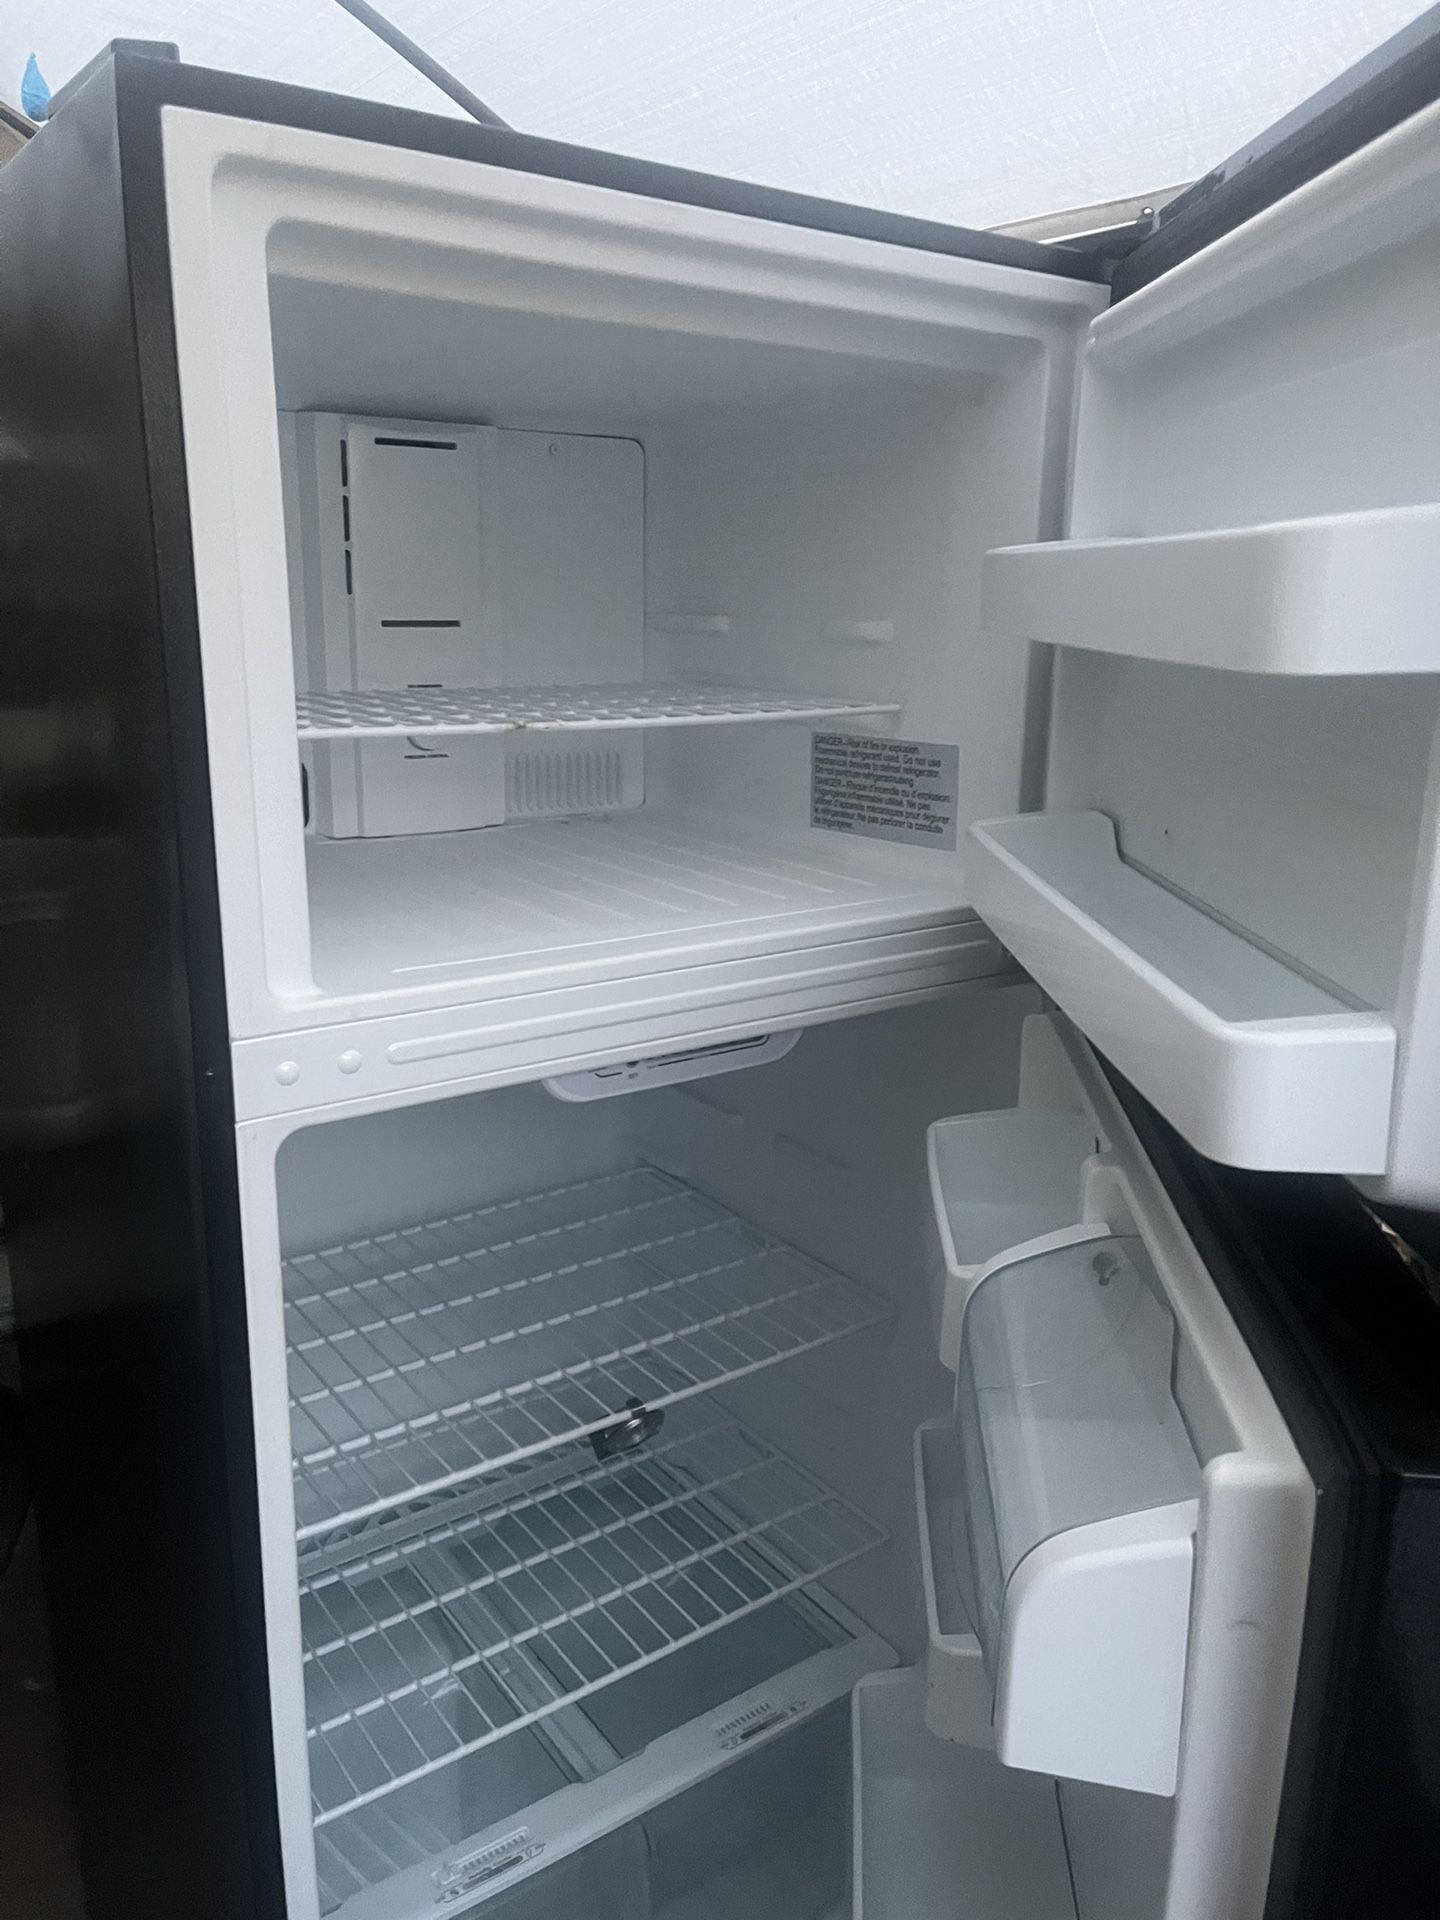 Refrigerador Como Nuevo